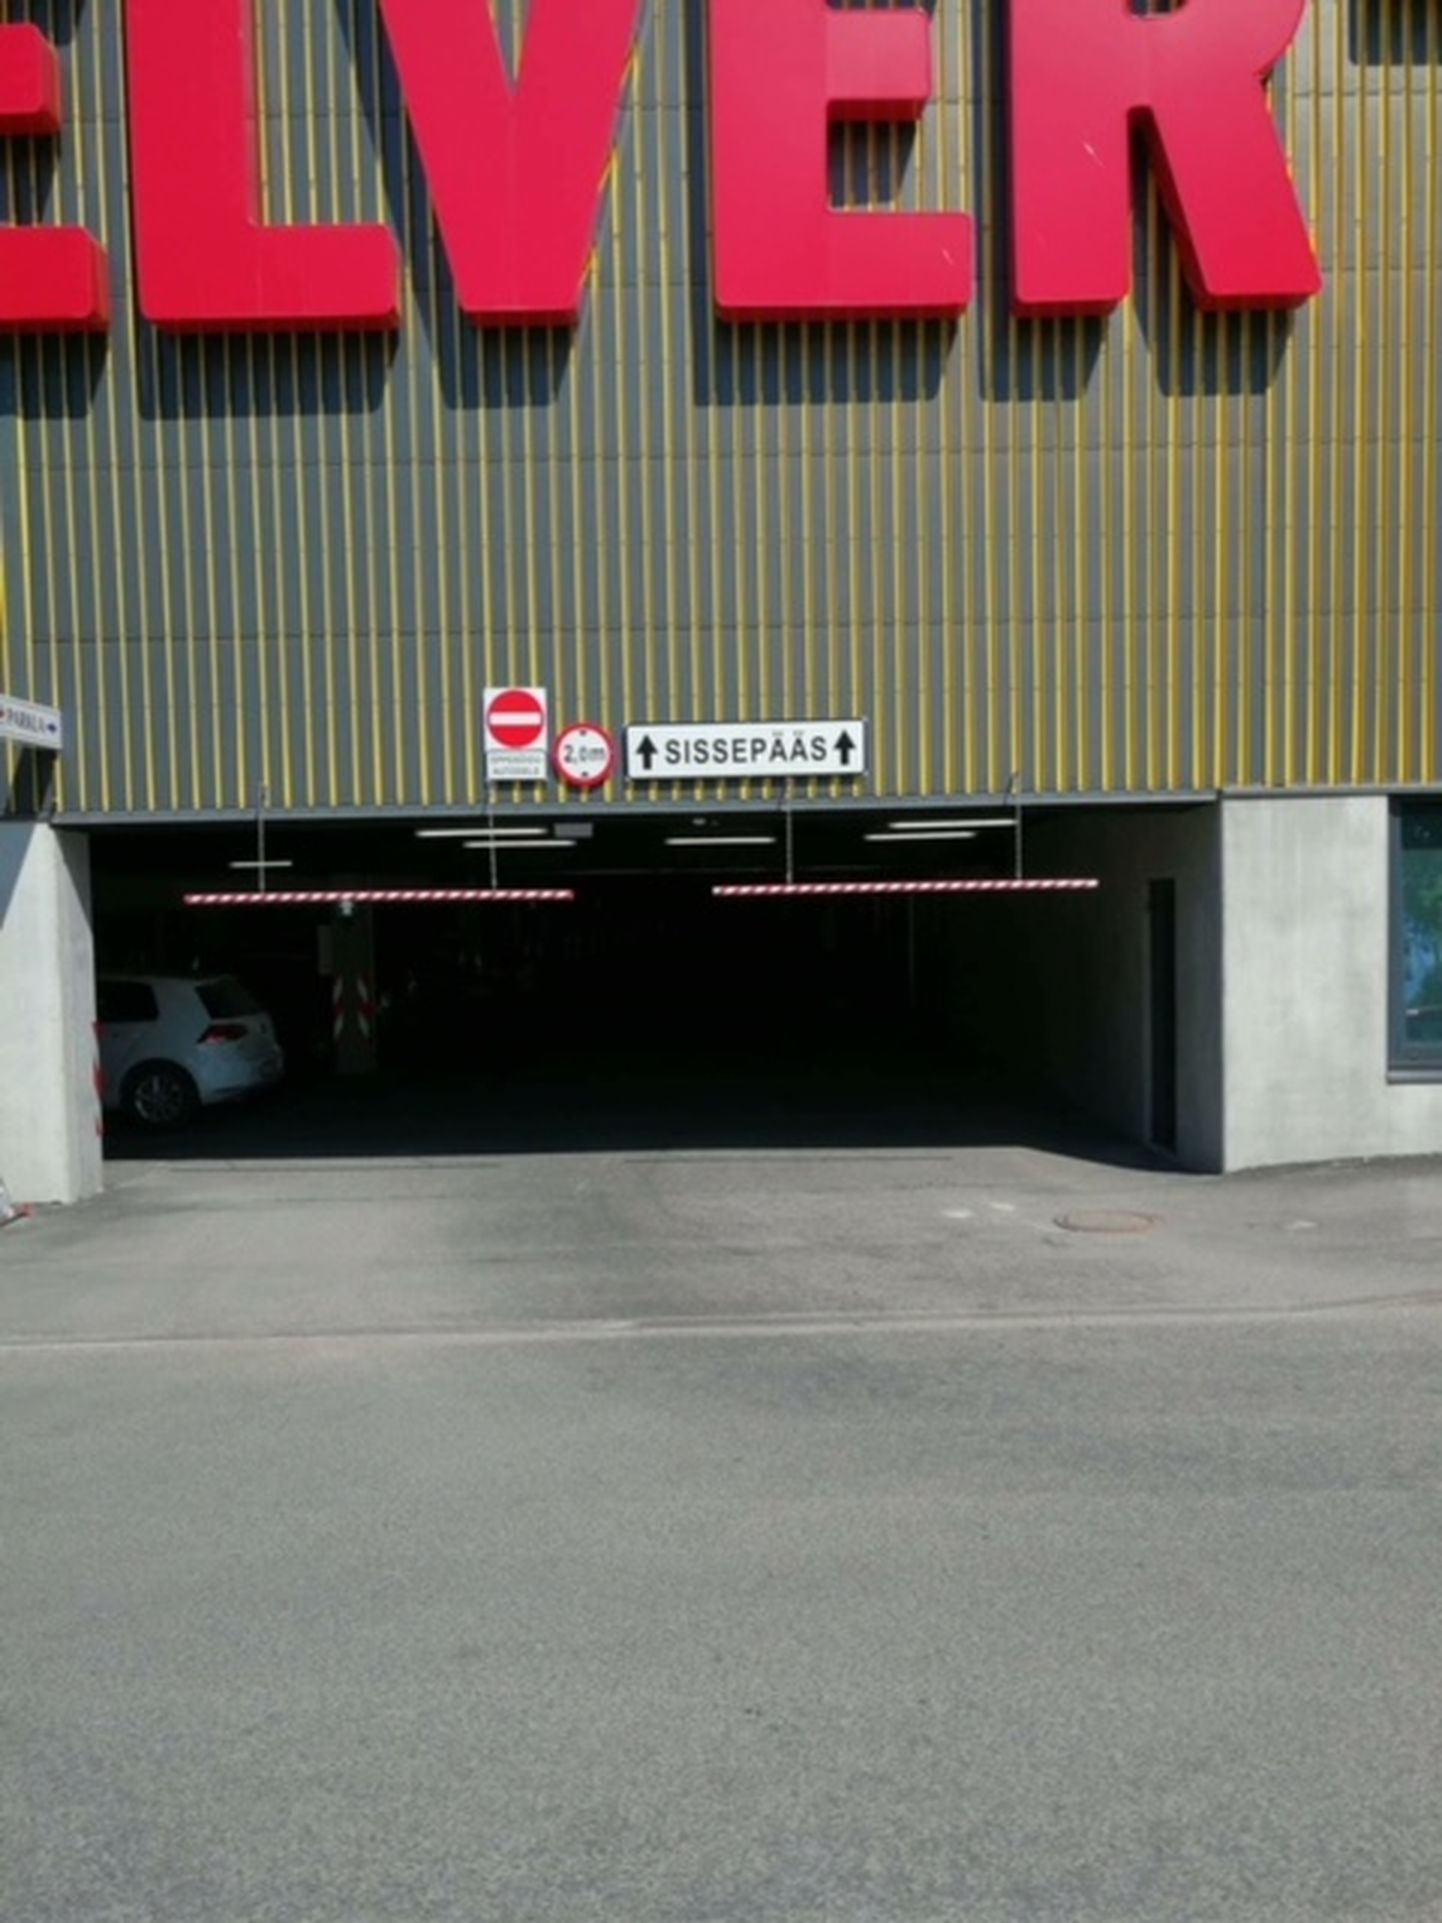 При въезде на подземную стоянку висит знак «Ограничения высоты» 2 метра. Согласно техпаспорту, высота внедорожника 1,69.